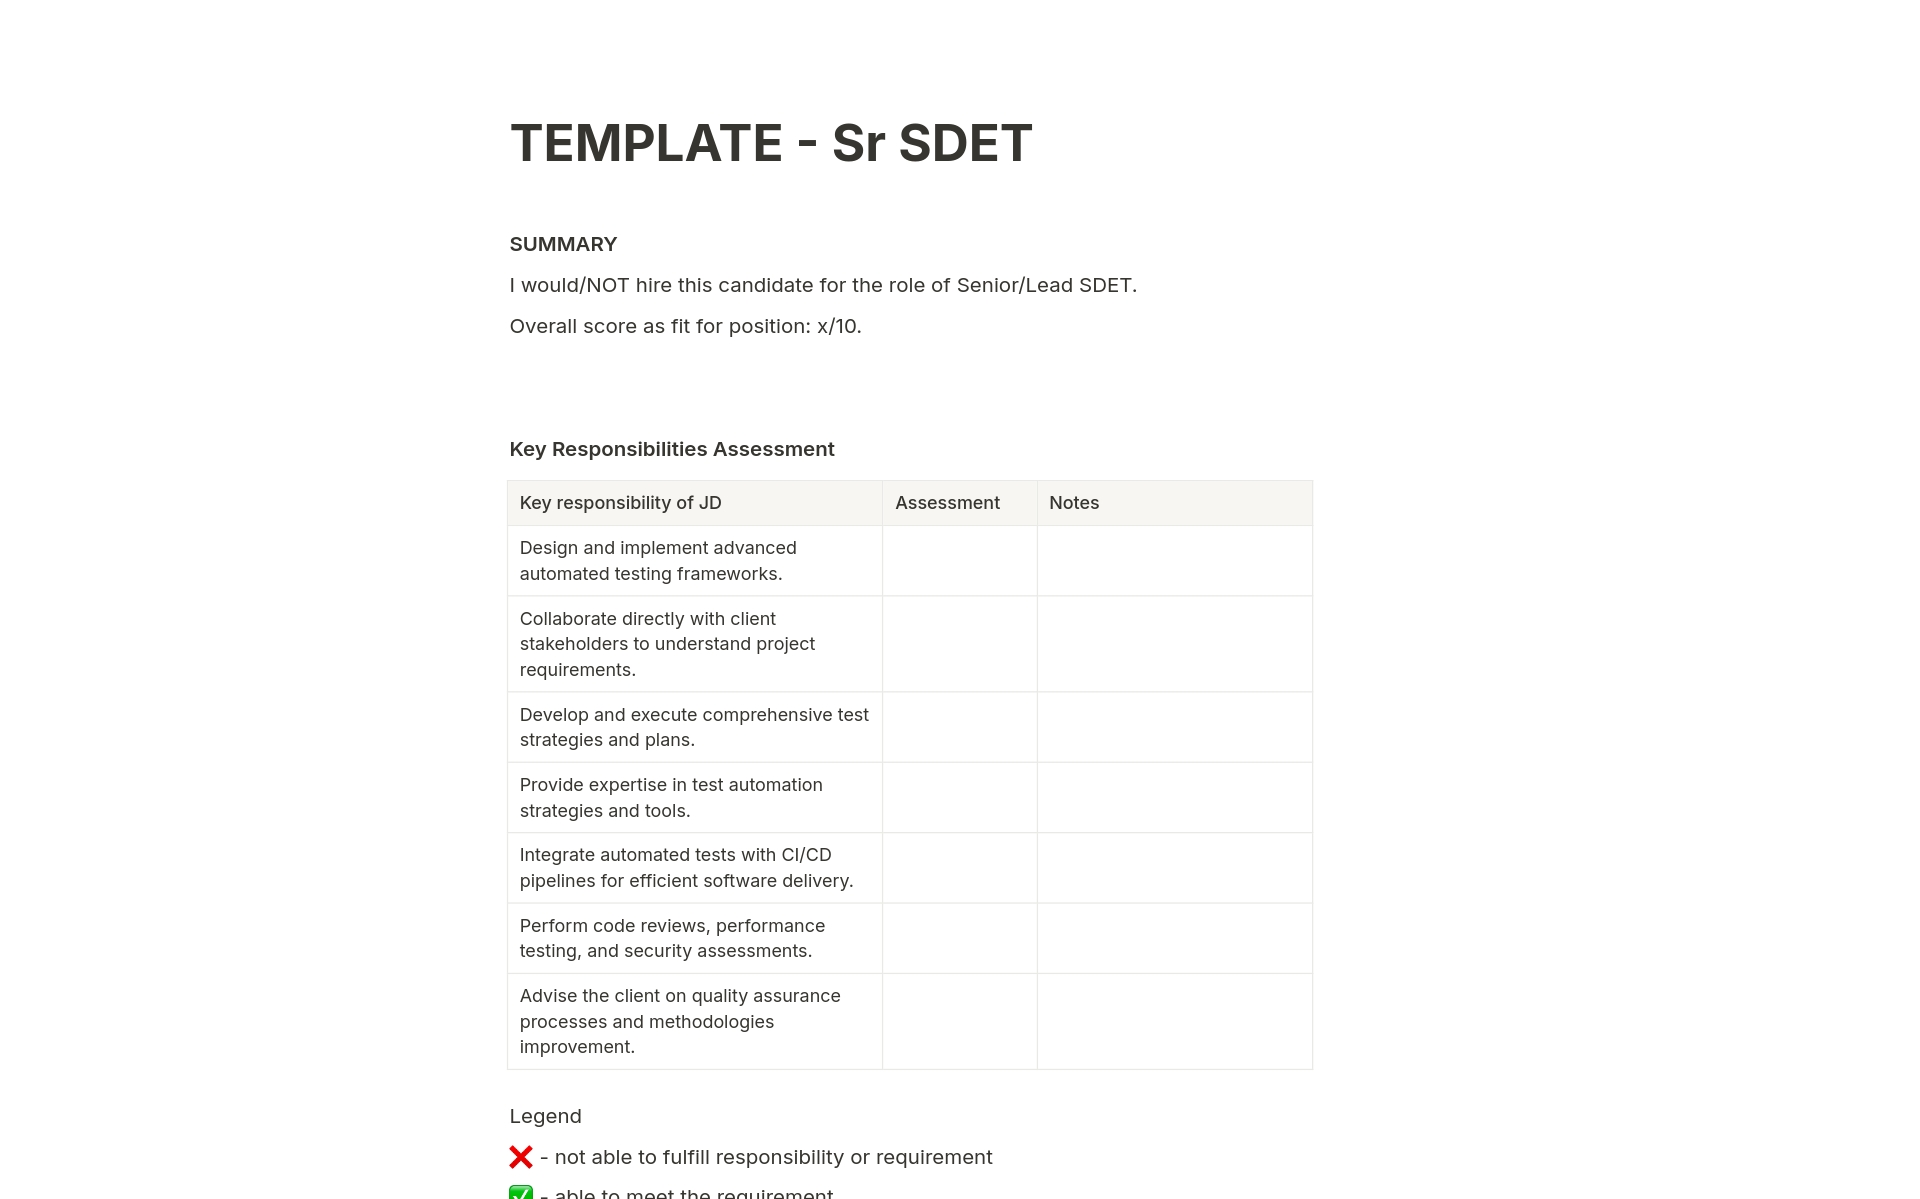 Feedback form for Sr SDET candidate notes